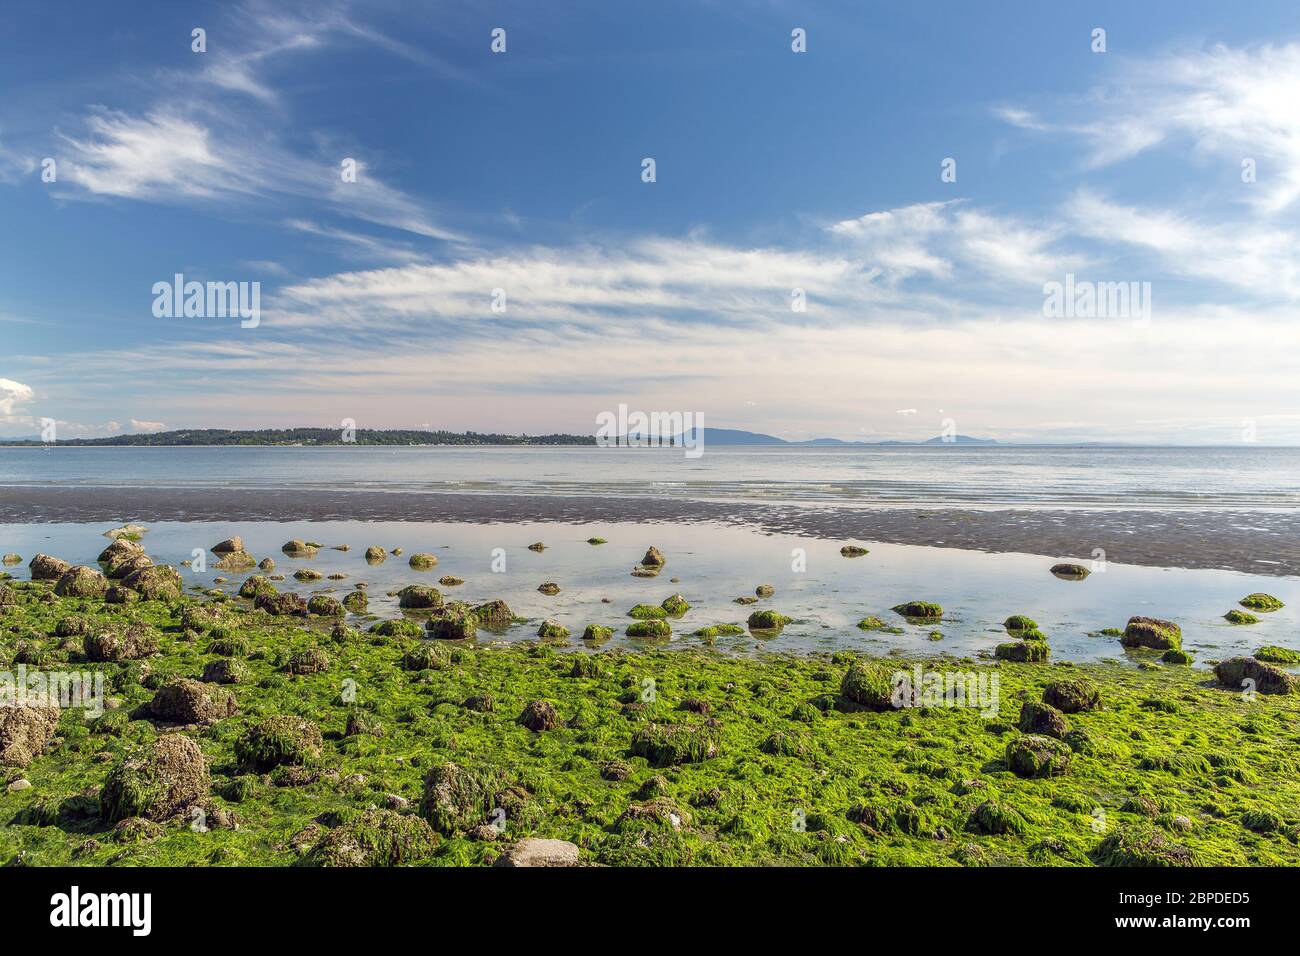 Vista desde White Rock Promenade sobre la Península Olímpica USA en marea baja con algas verdes brillantes, rocas y charcos de marea, cielos azules con algunas nubes. Foto de stock